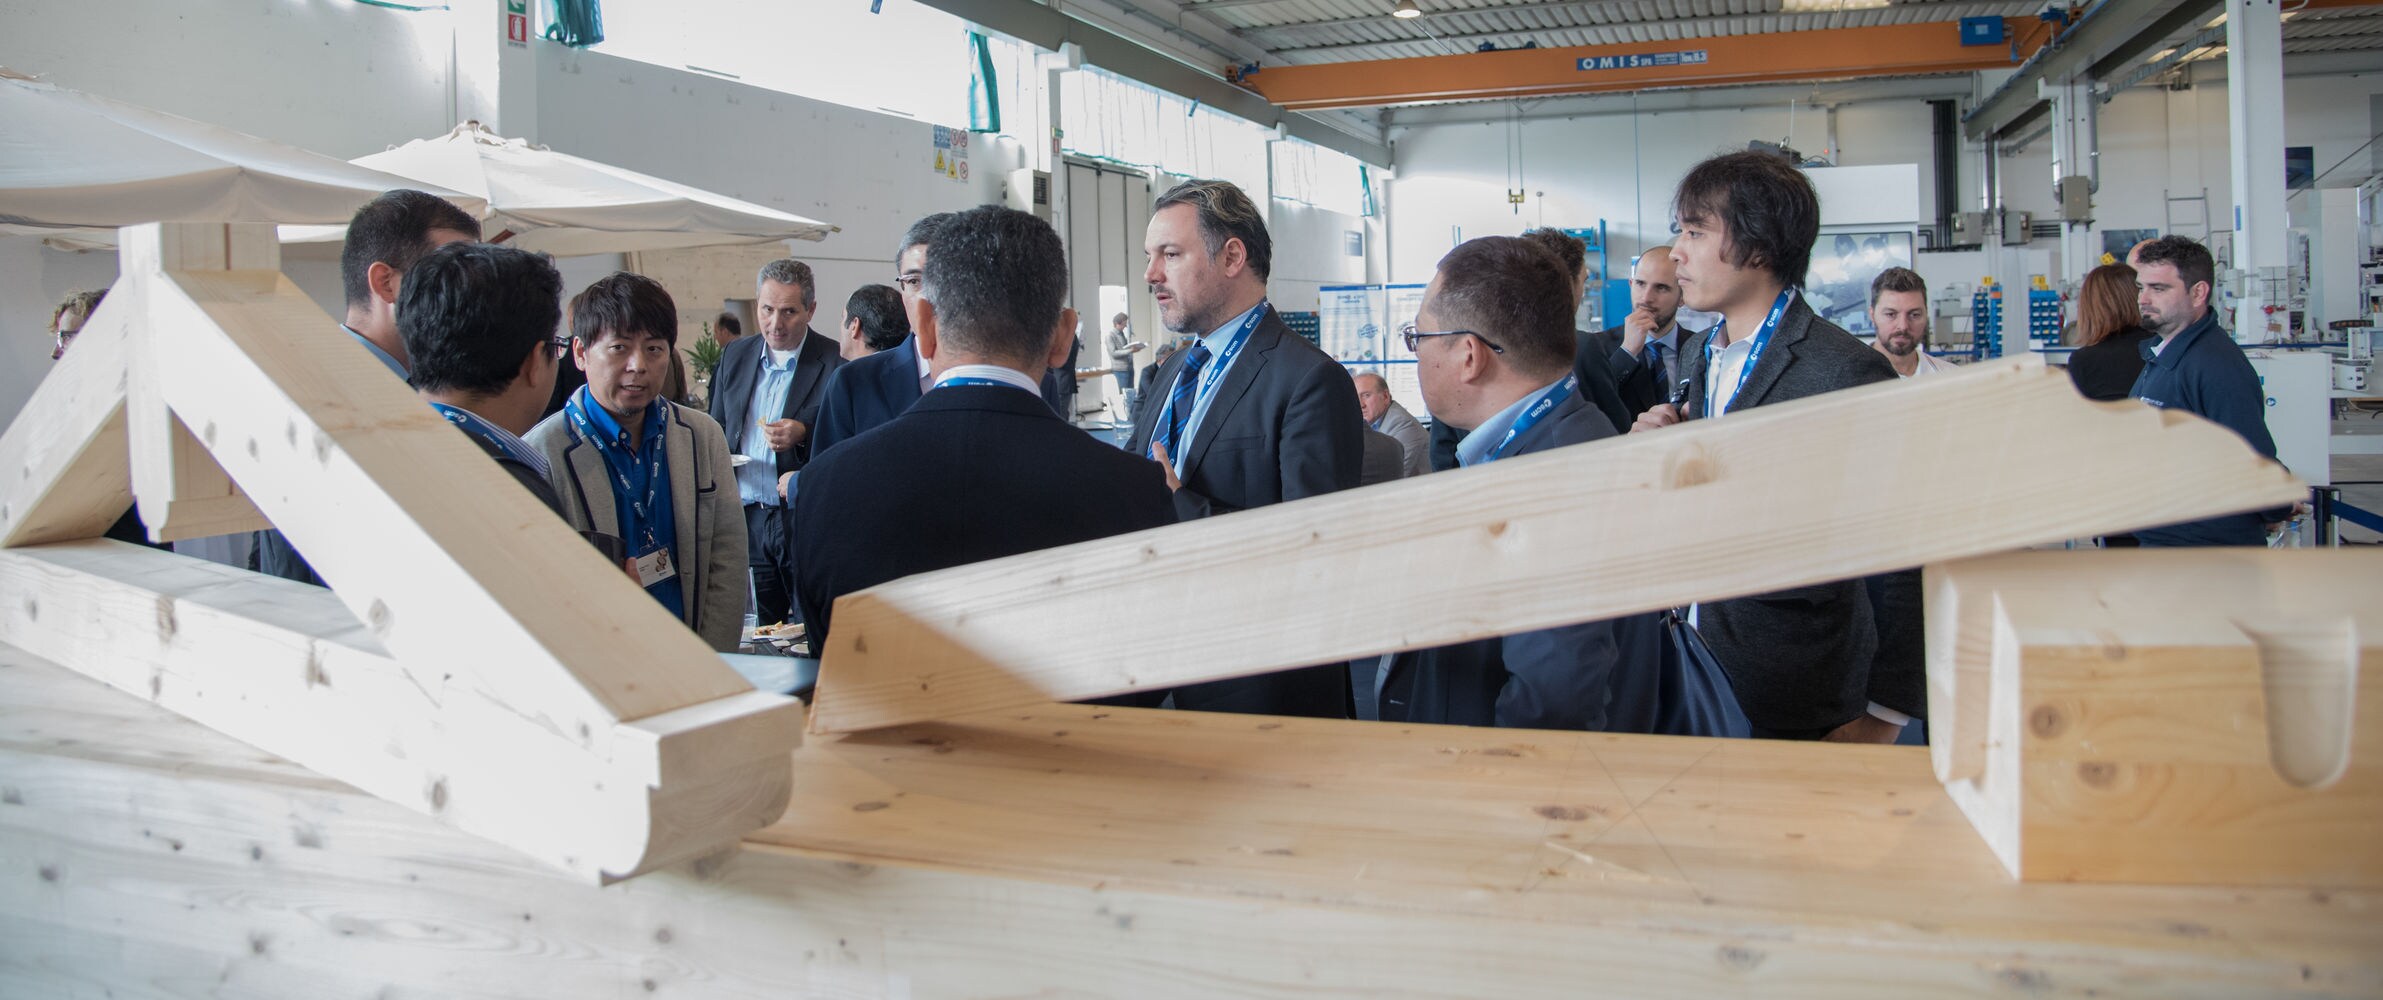 Edilizia in legno, Scm partner del nuovo Master del Politecnico di Torino